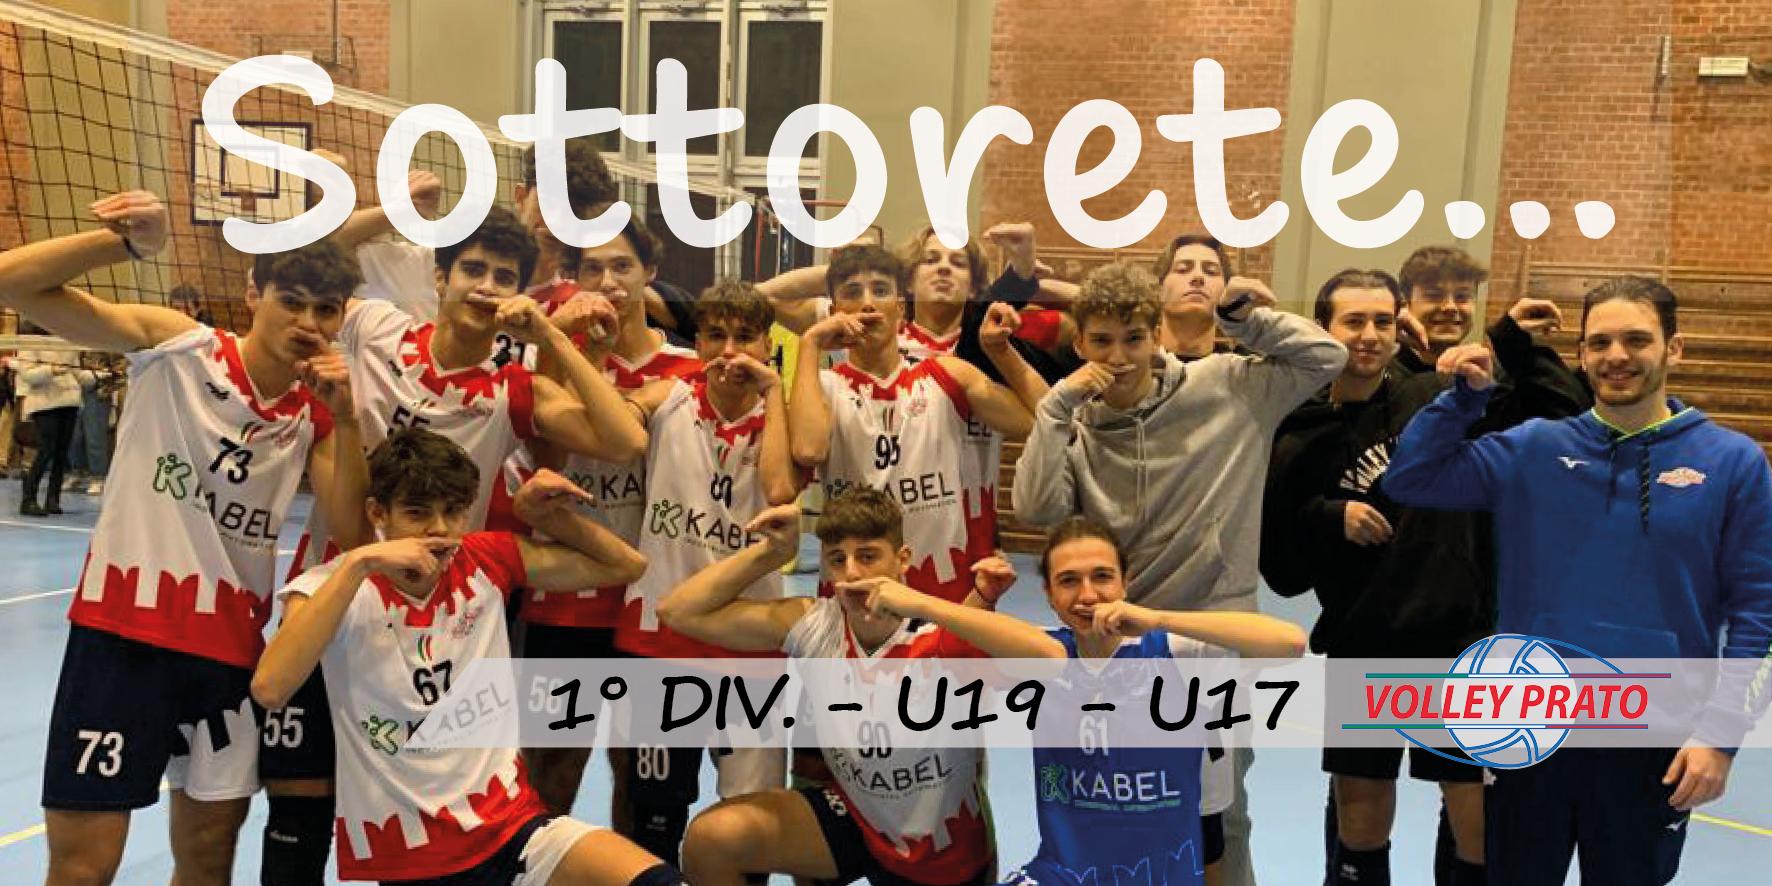 Rubrica 1 DIV - U19-U17: settimana dal 4 al 11/12/22